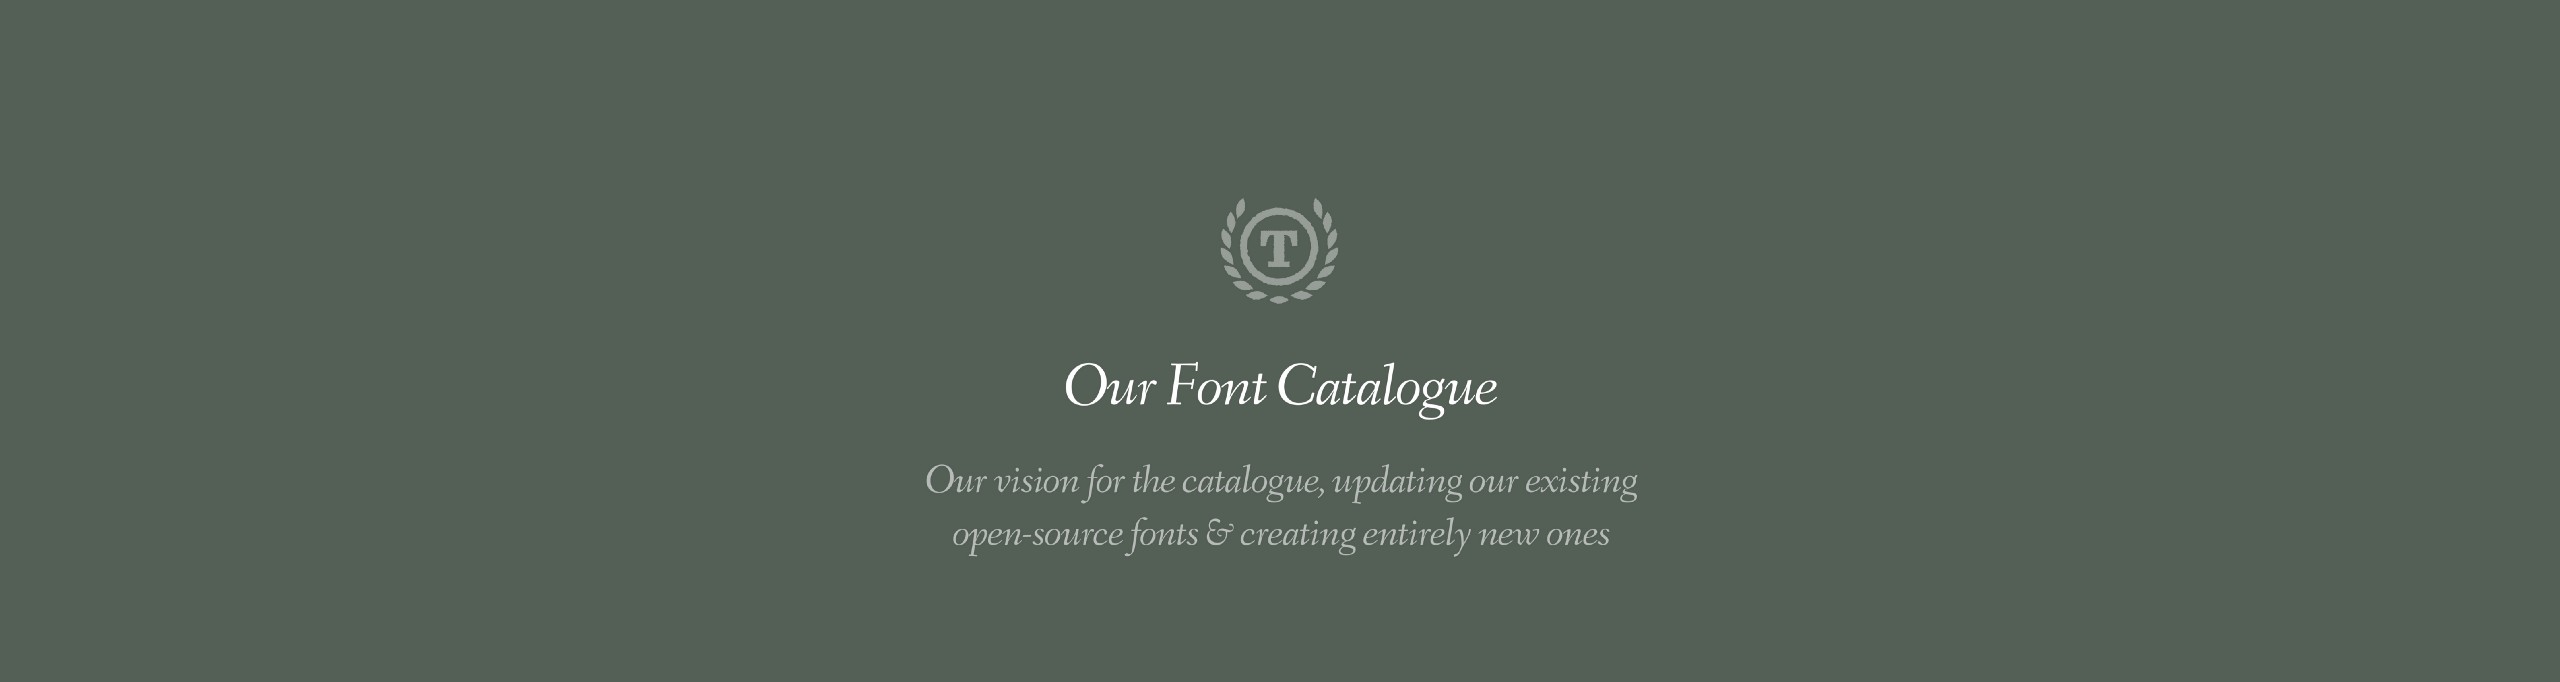 Our Font Catalogue